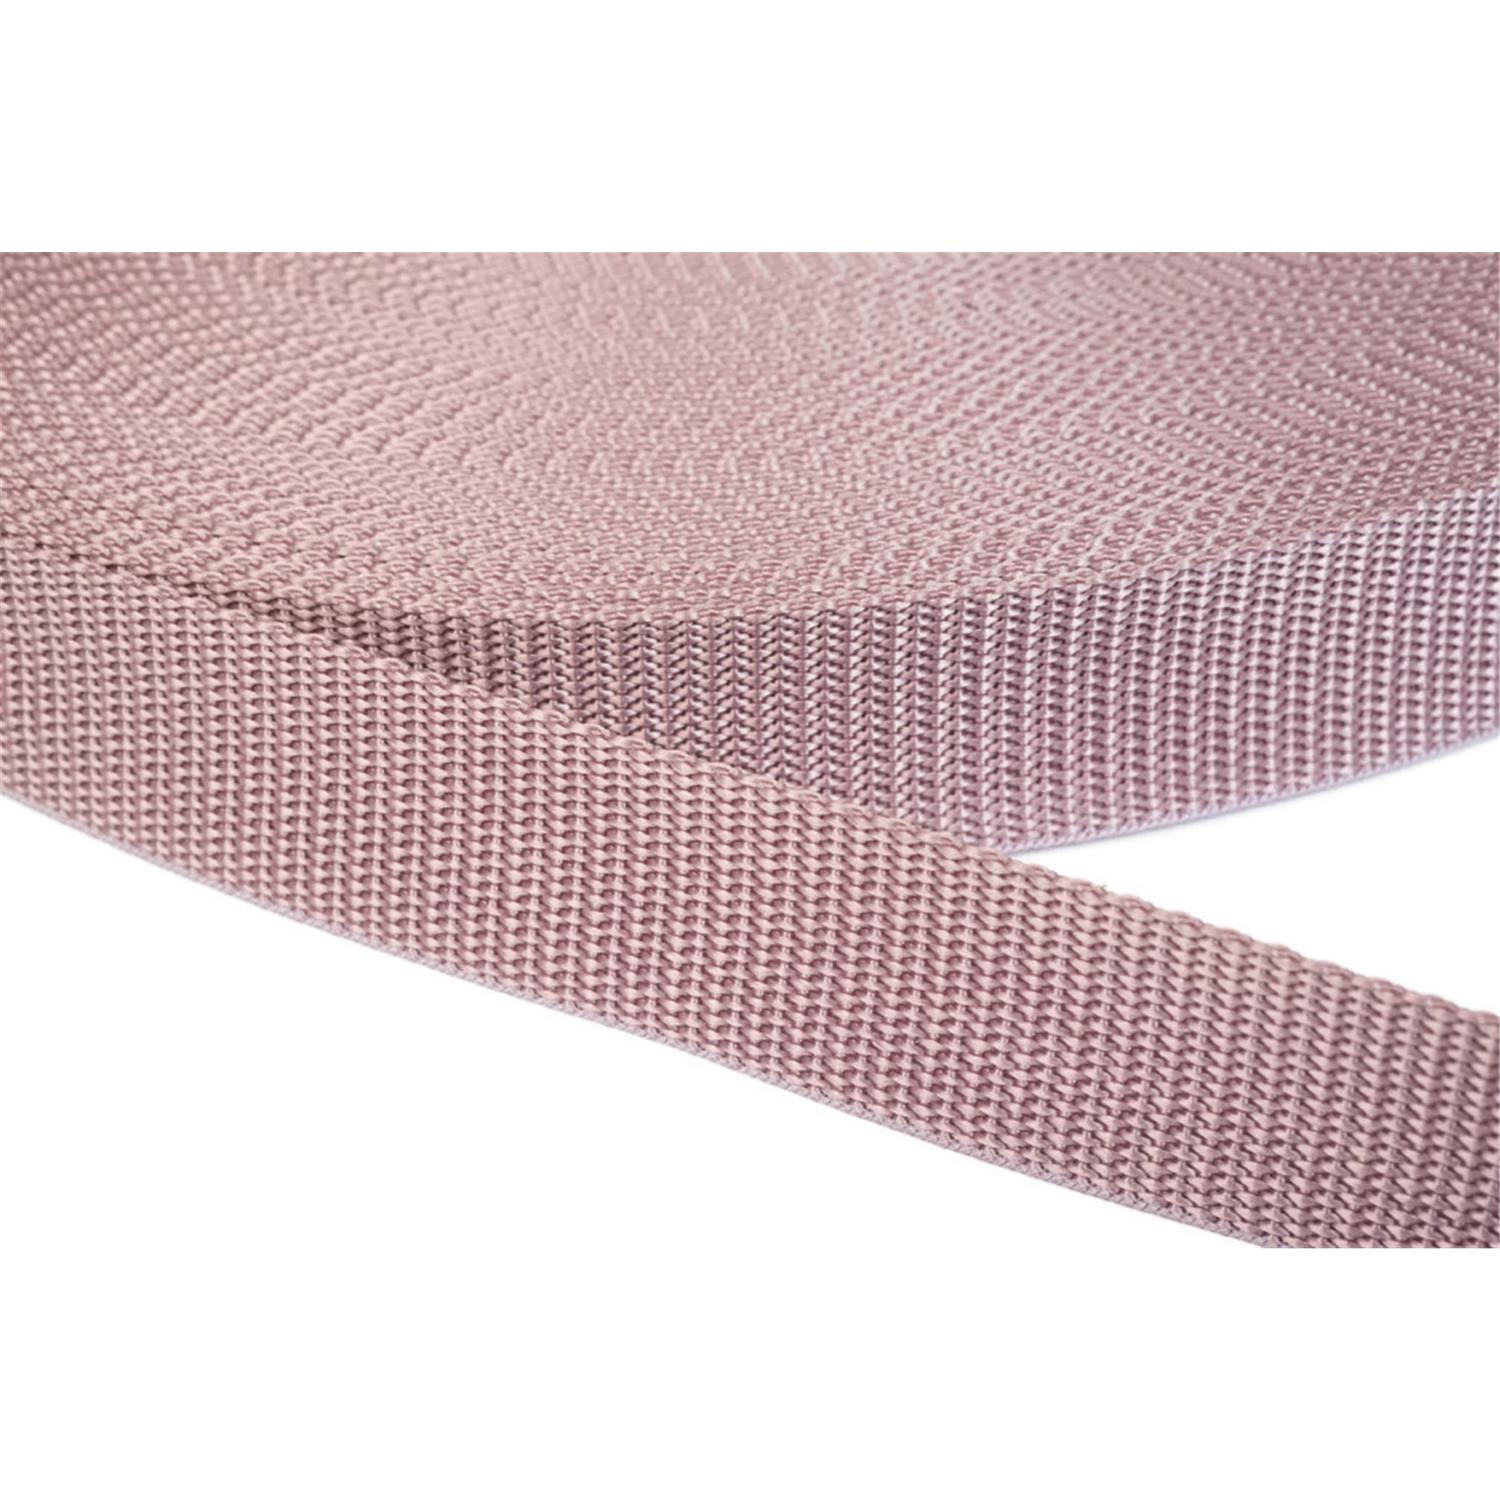 Gurtband 15mm breit aus Polypropylen in 41 Farben 15 - altrosa 12 Meter